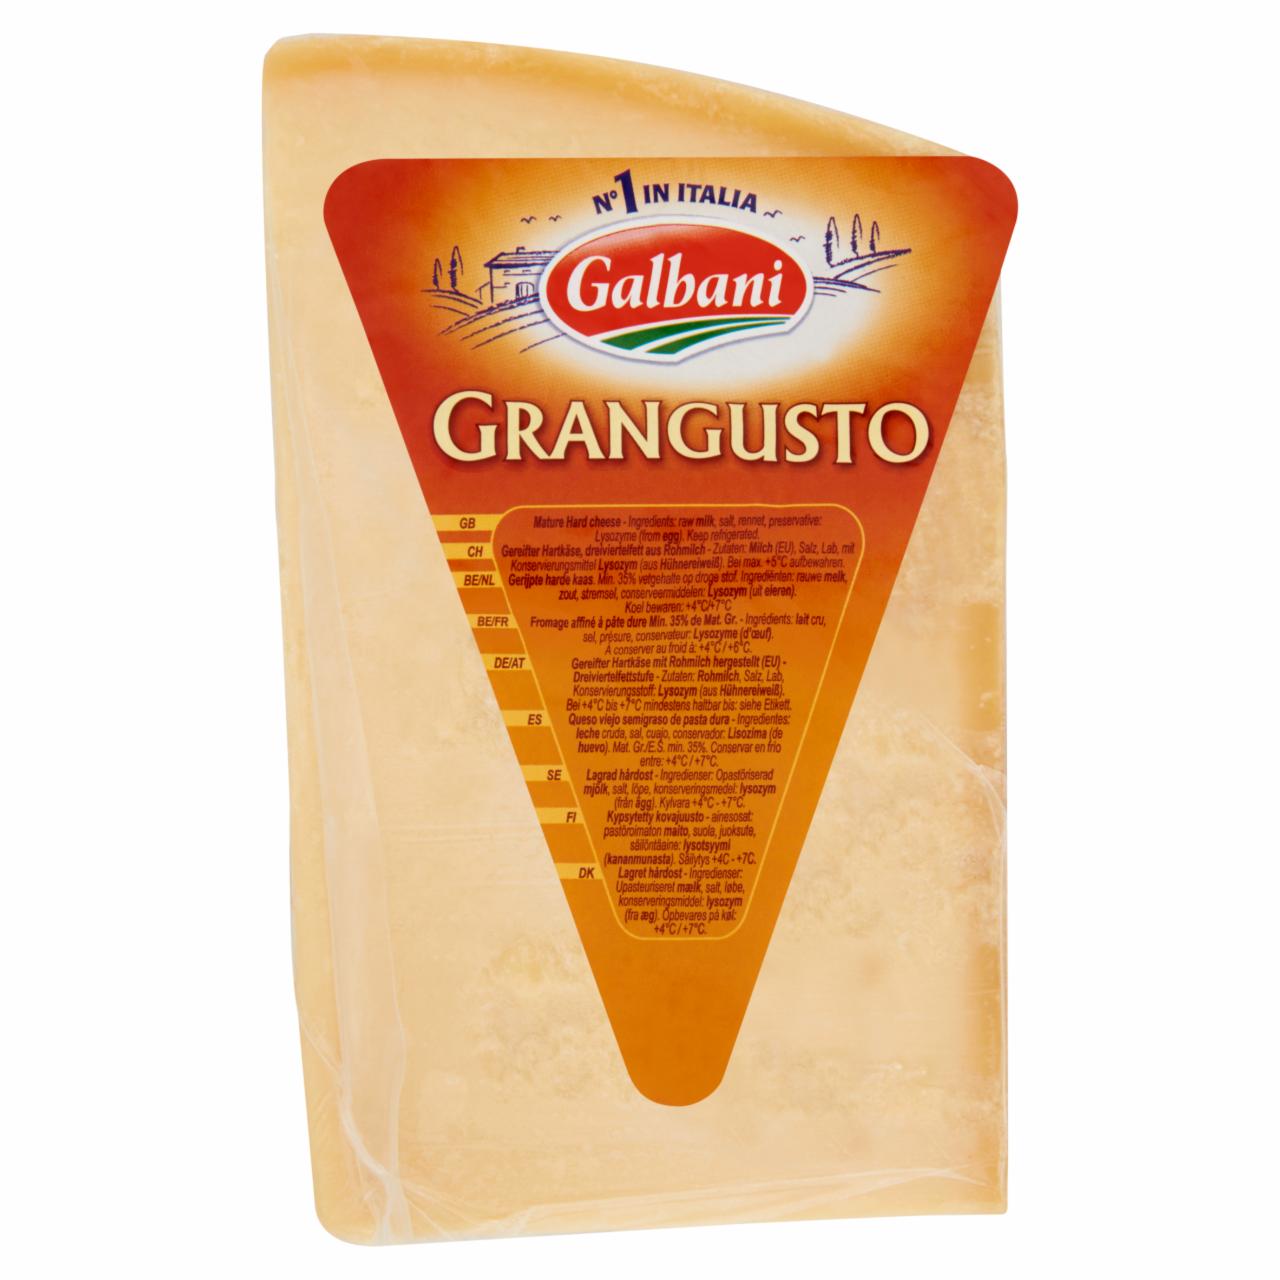 Képek - Galbani Grangusto félzsíros kemény sajt